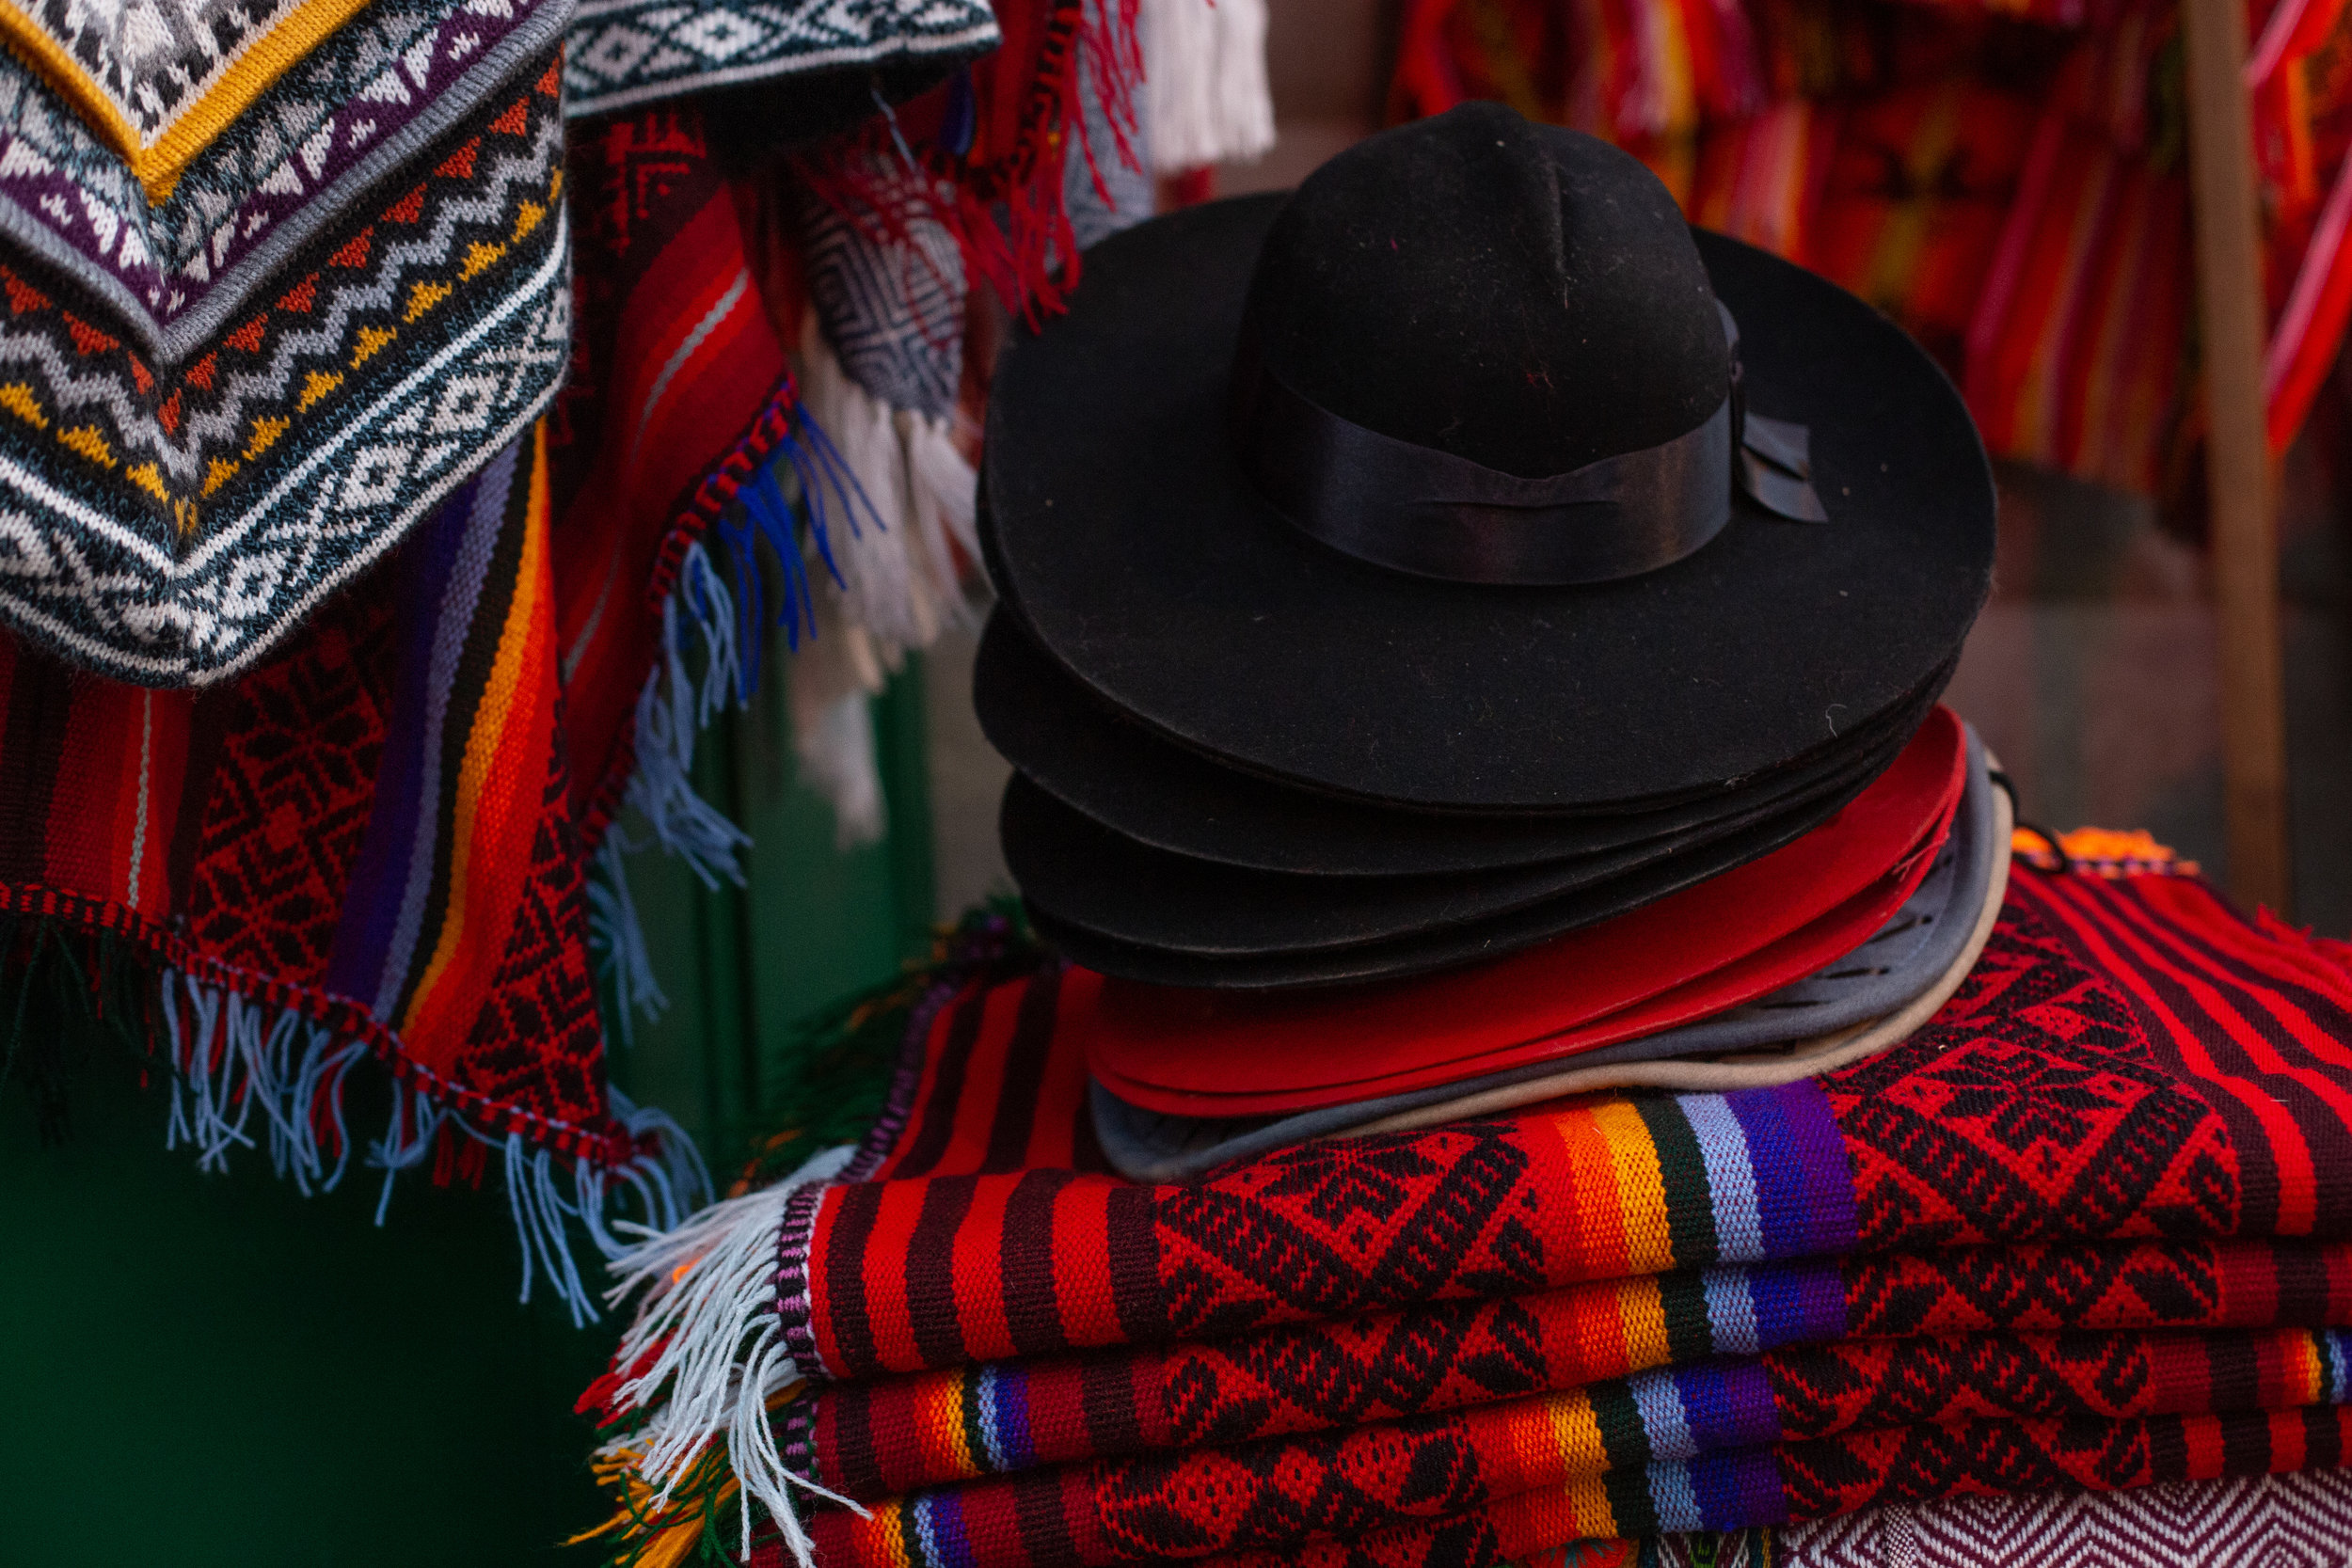 Clothing Market - Cusco